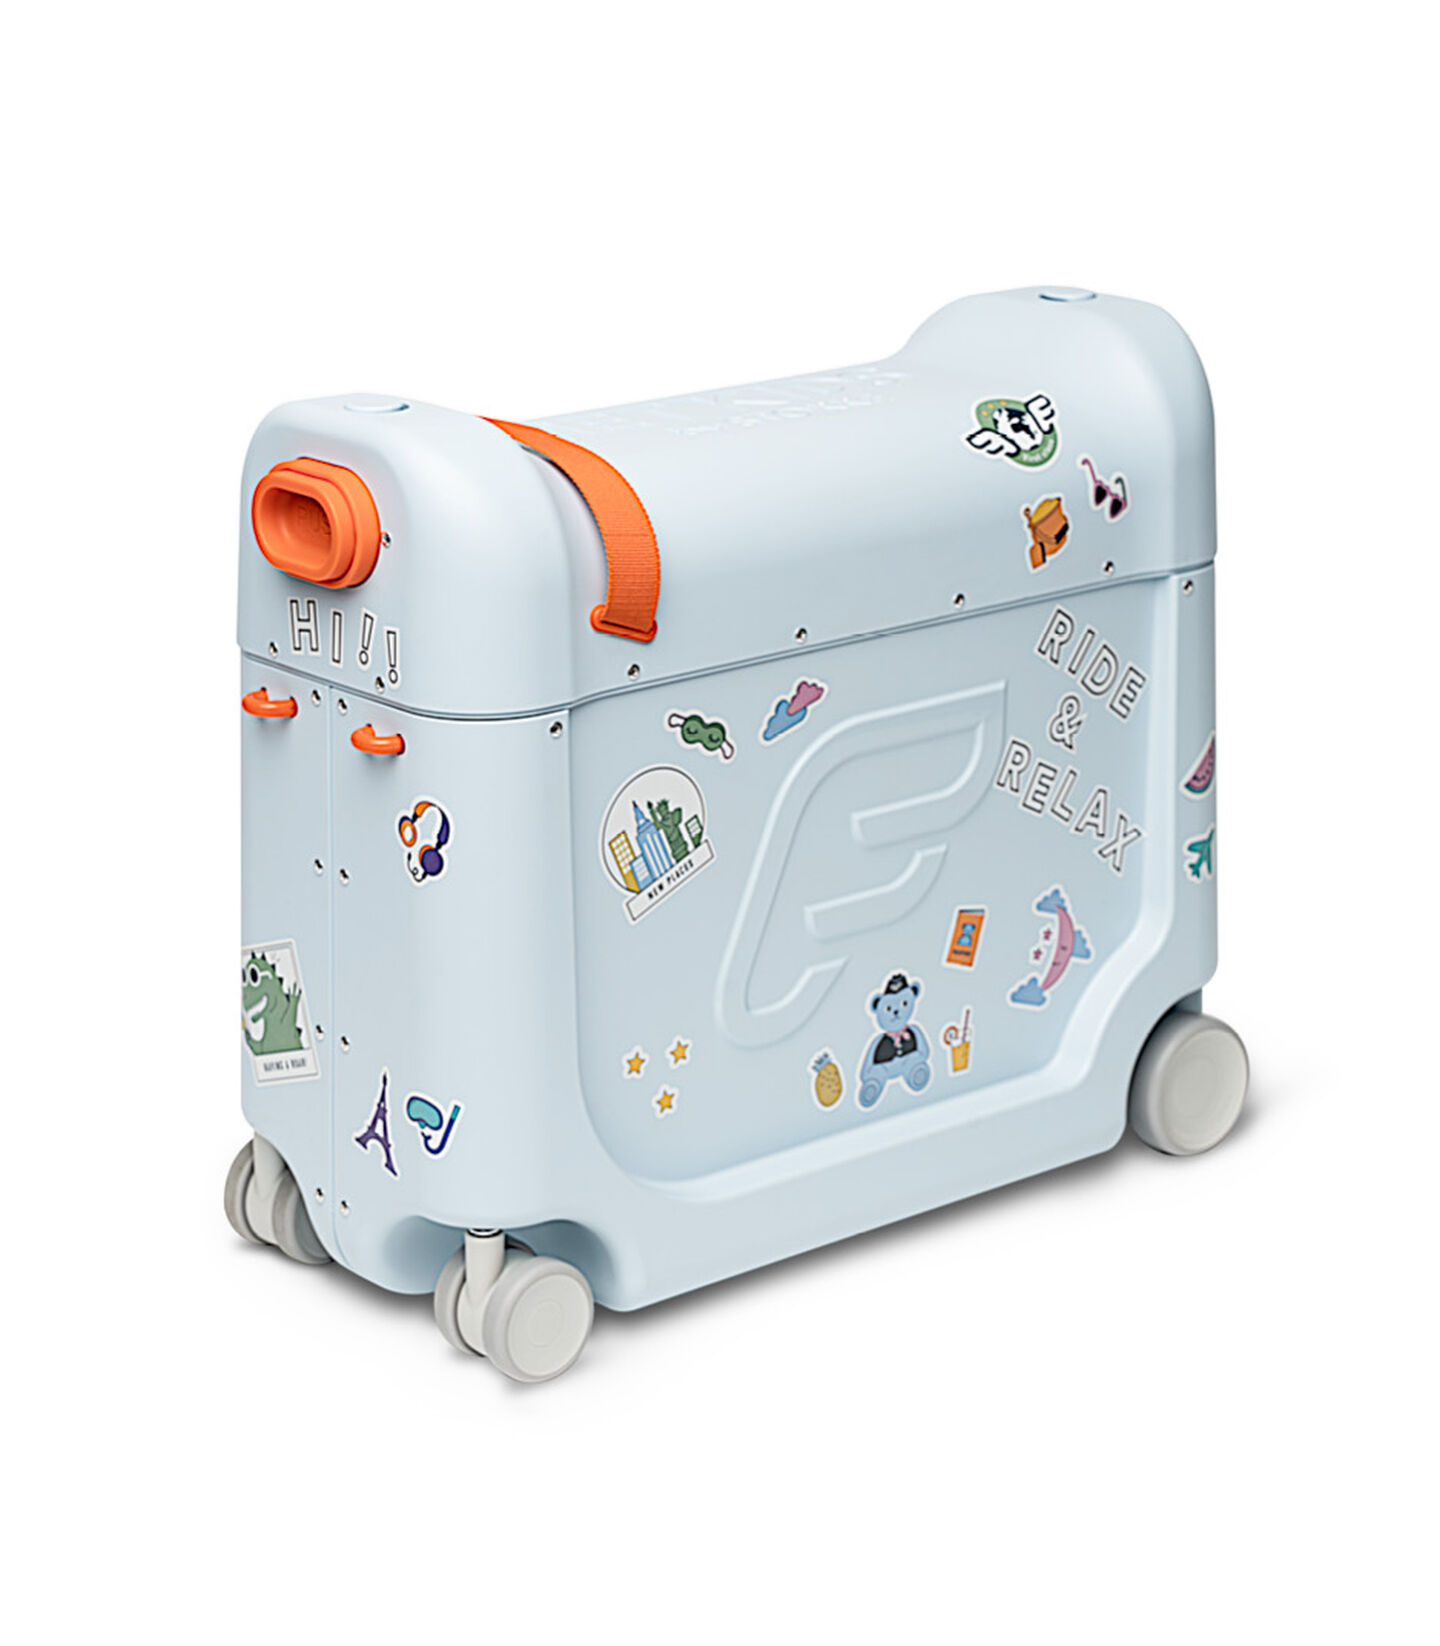 Kids' Vehicle Blue Carry On Travel Luggage Set